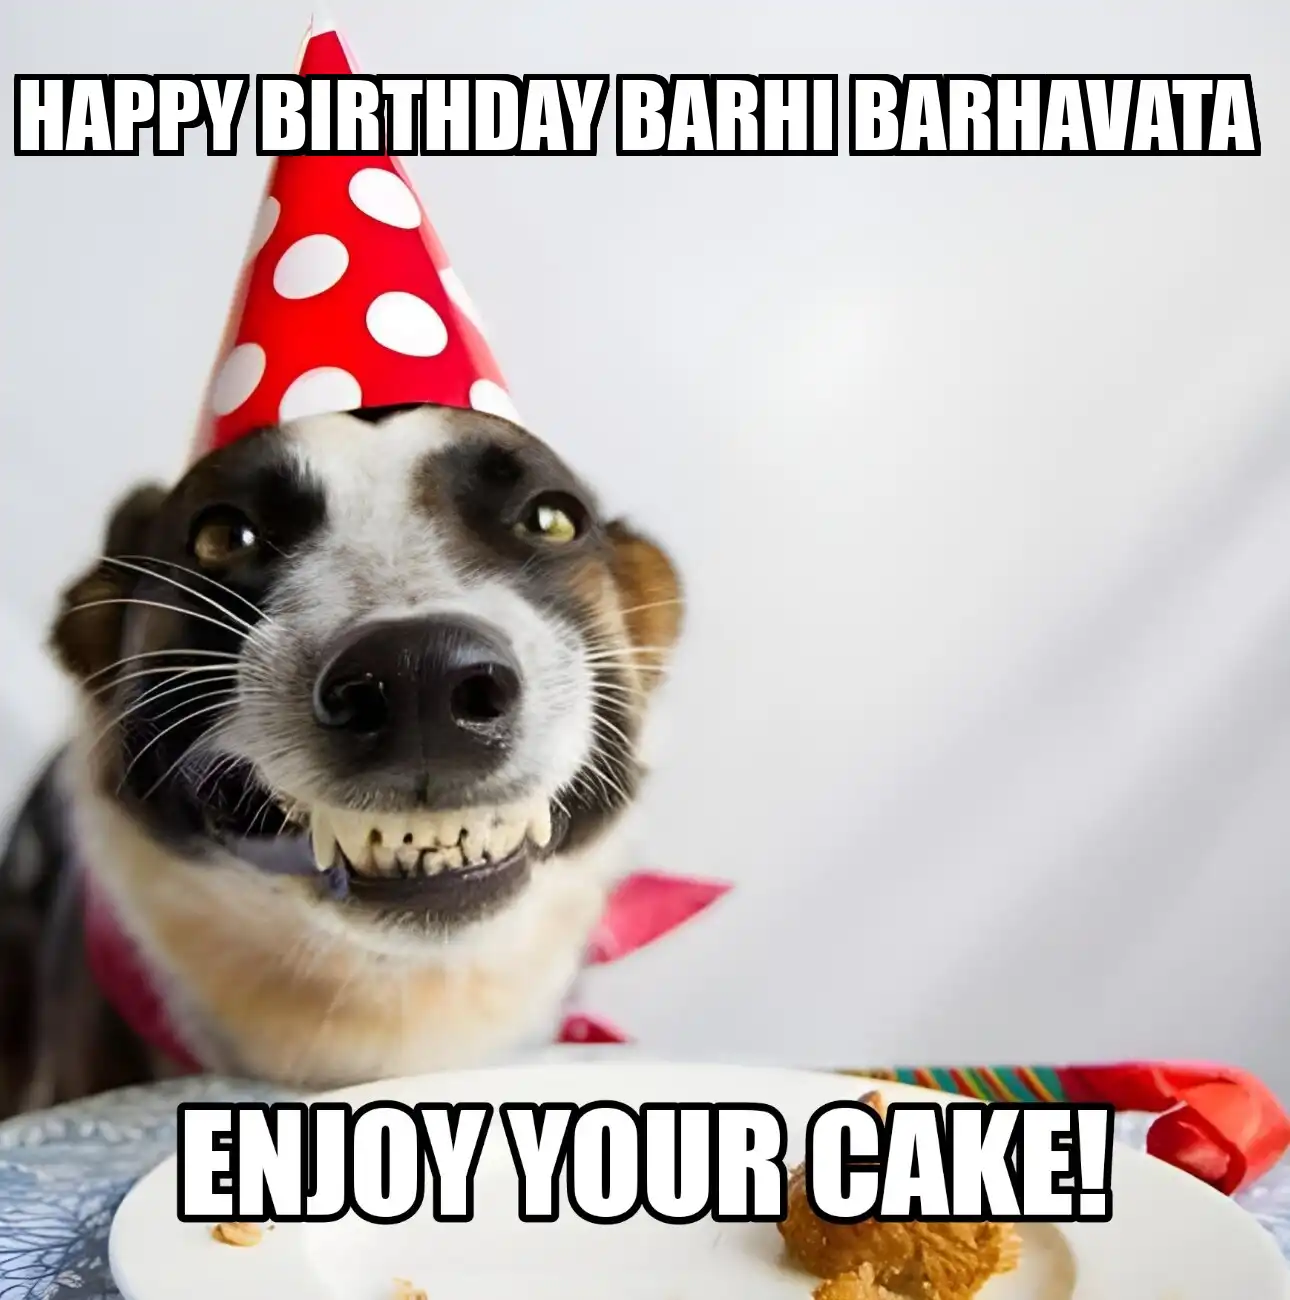 Happy Birthday Barhi Barhavata Enjoy Your Cake Dog Meme